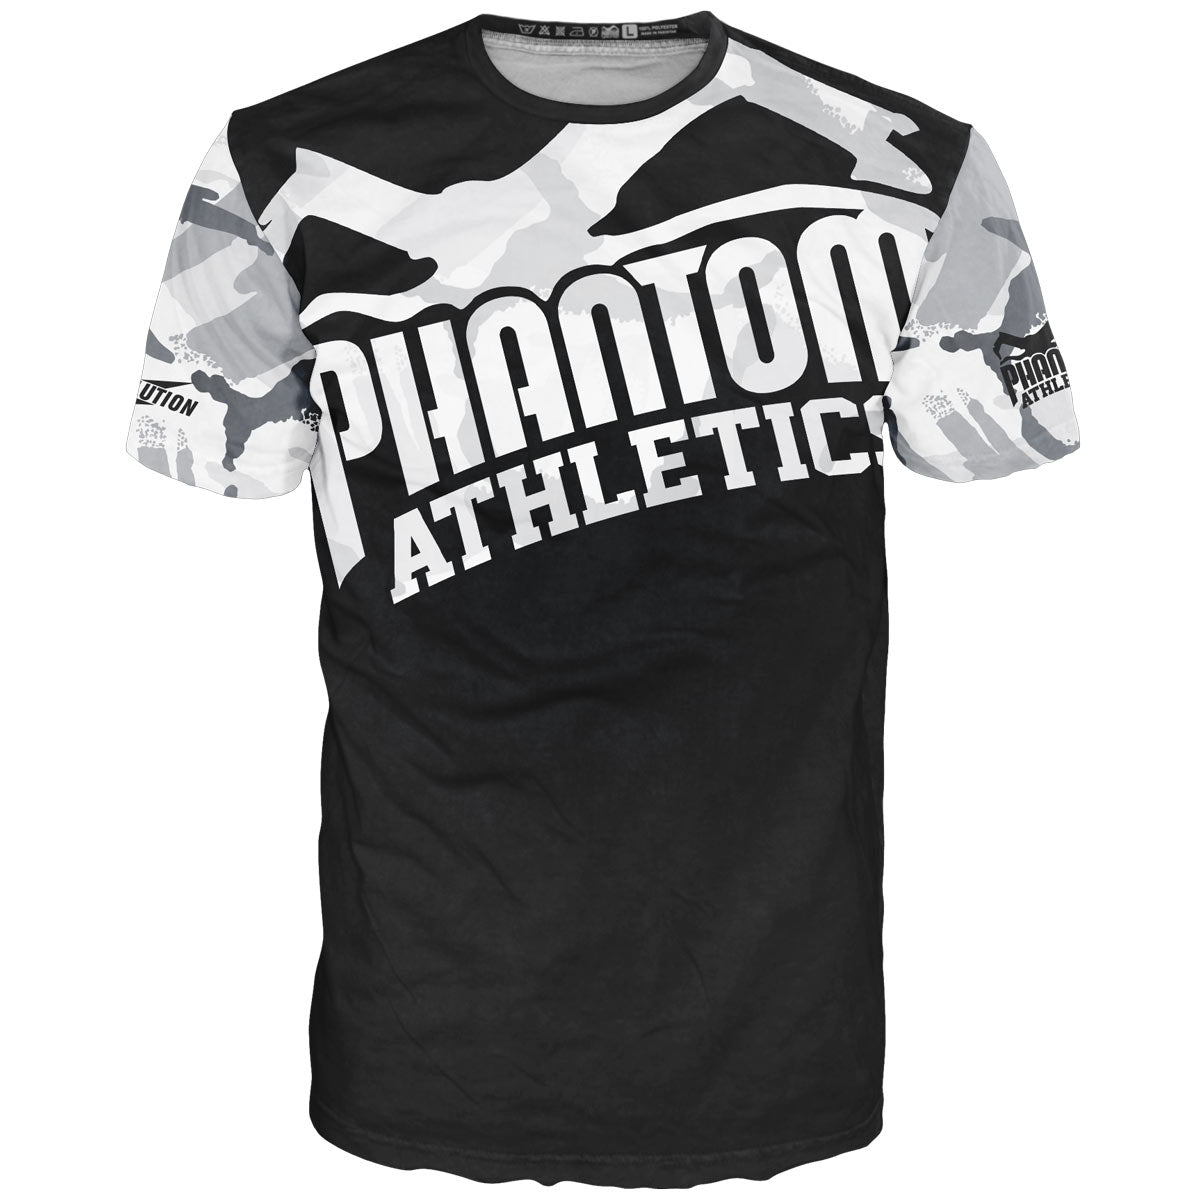 Phantom Kampfsport EVO träningströja i vinter/urban camo look. Andningsbar prestationsträningströja för MMA, Muay Thai, BJJ och kickboxning.